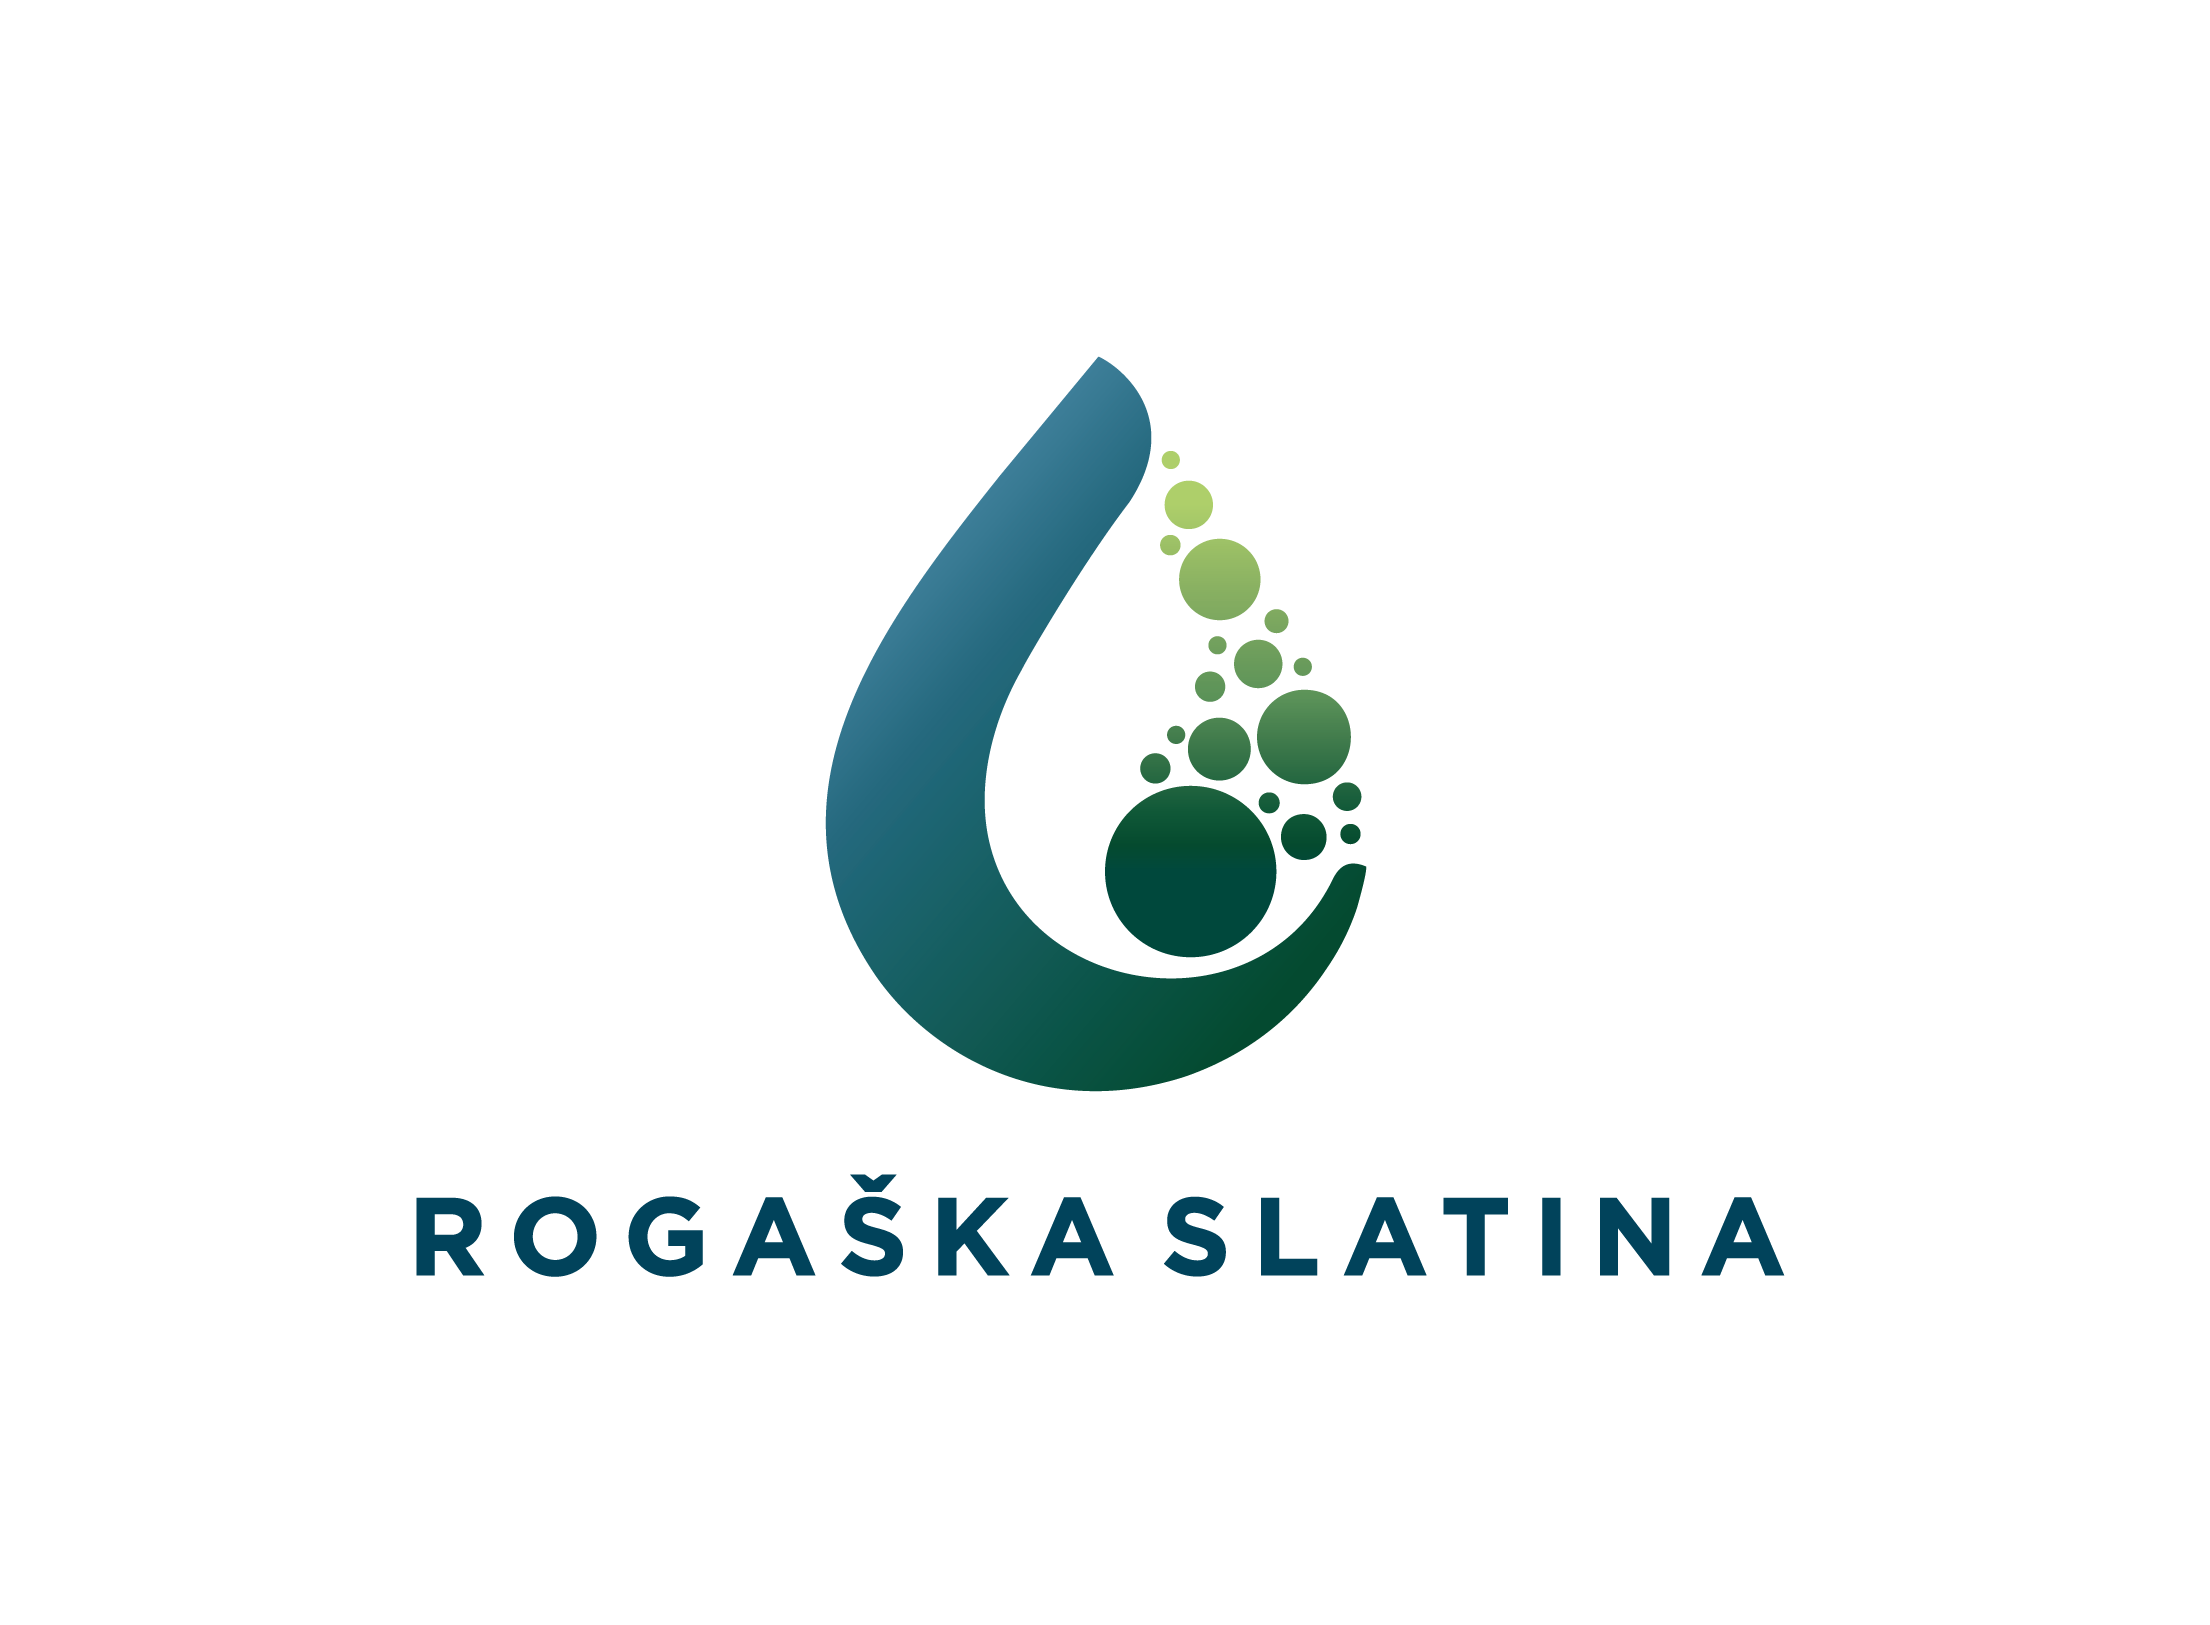 Рогашка Слатина: выбираете свой путь! отдых и лечение в Словении курорты